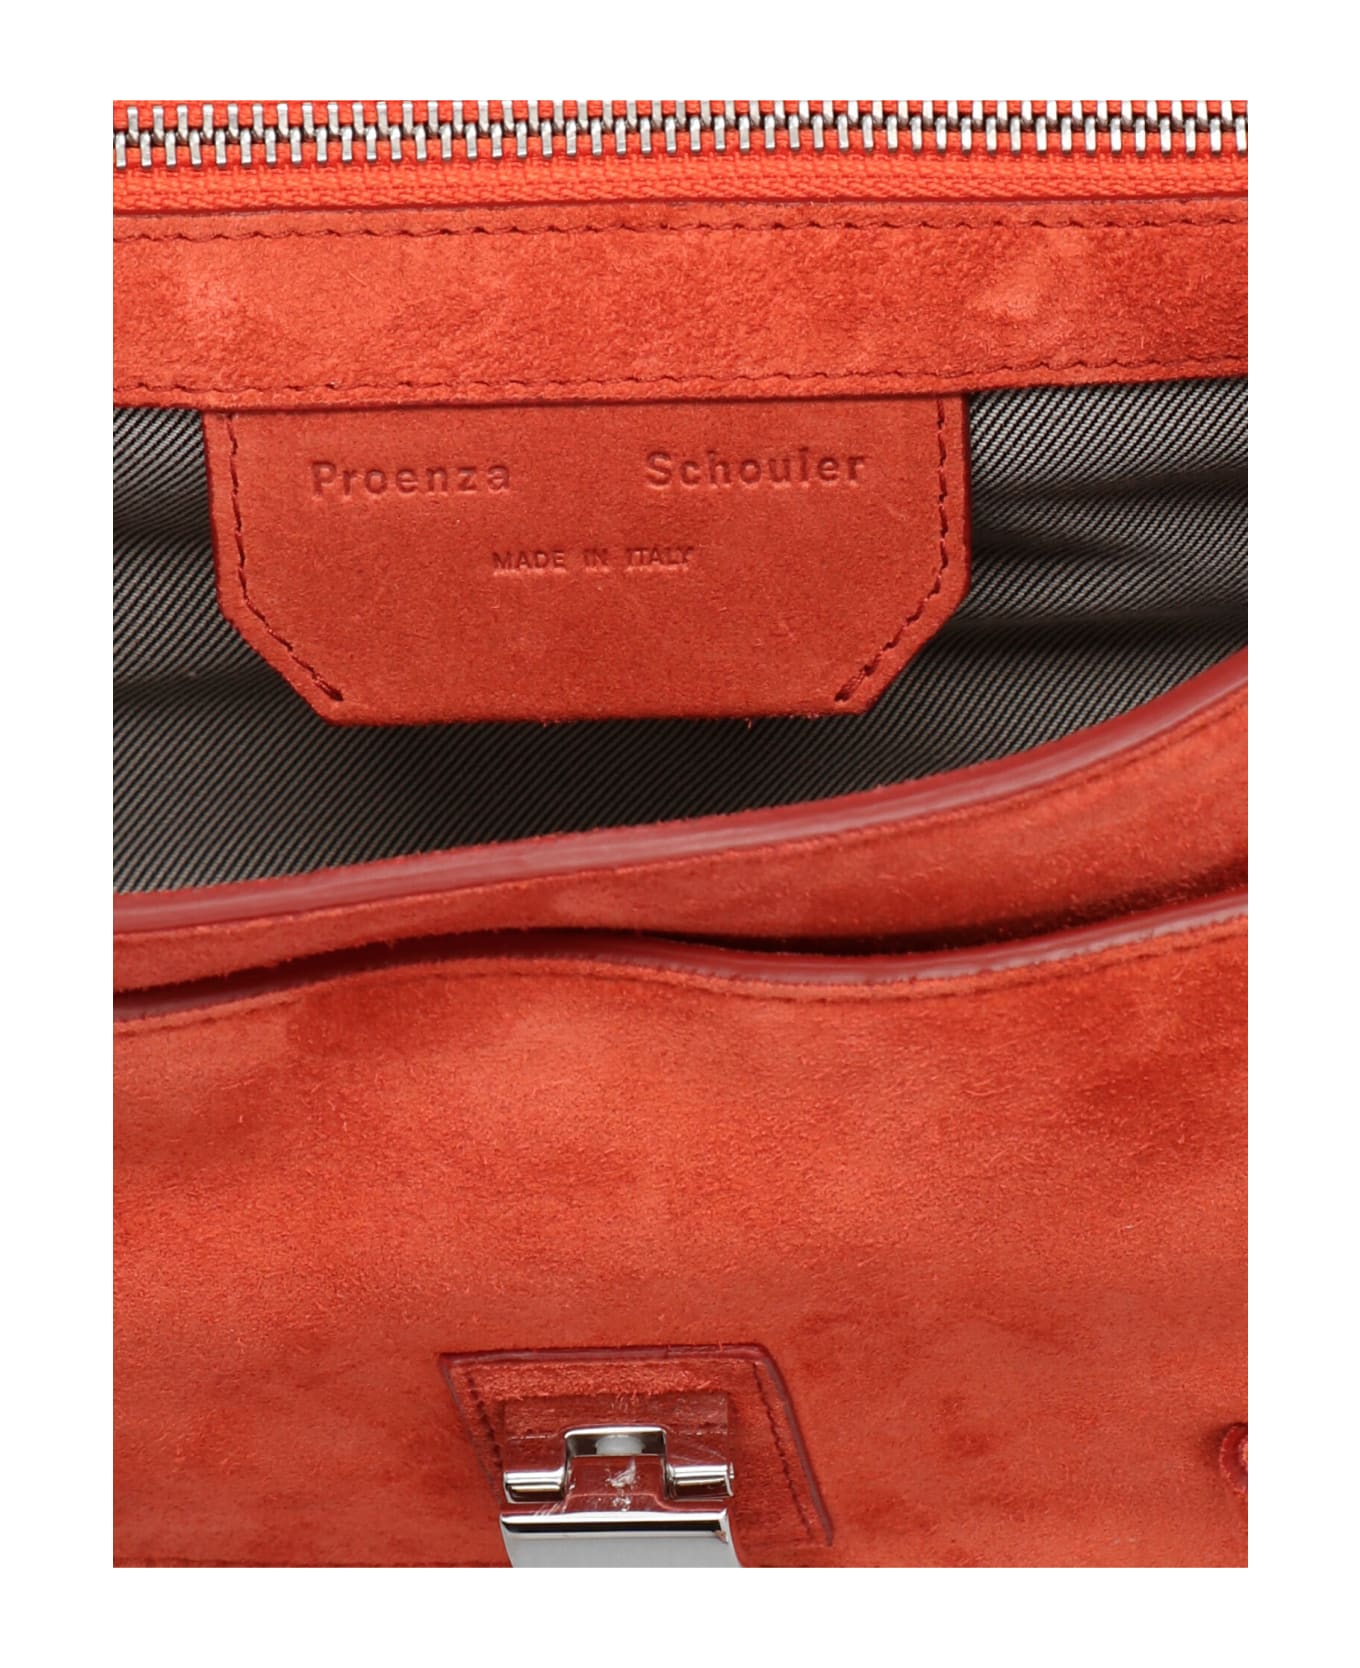 Proenza Schouler 'ps1 Tiny' Handbag - Red